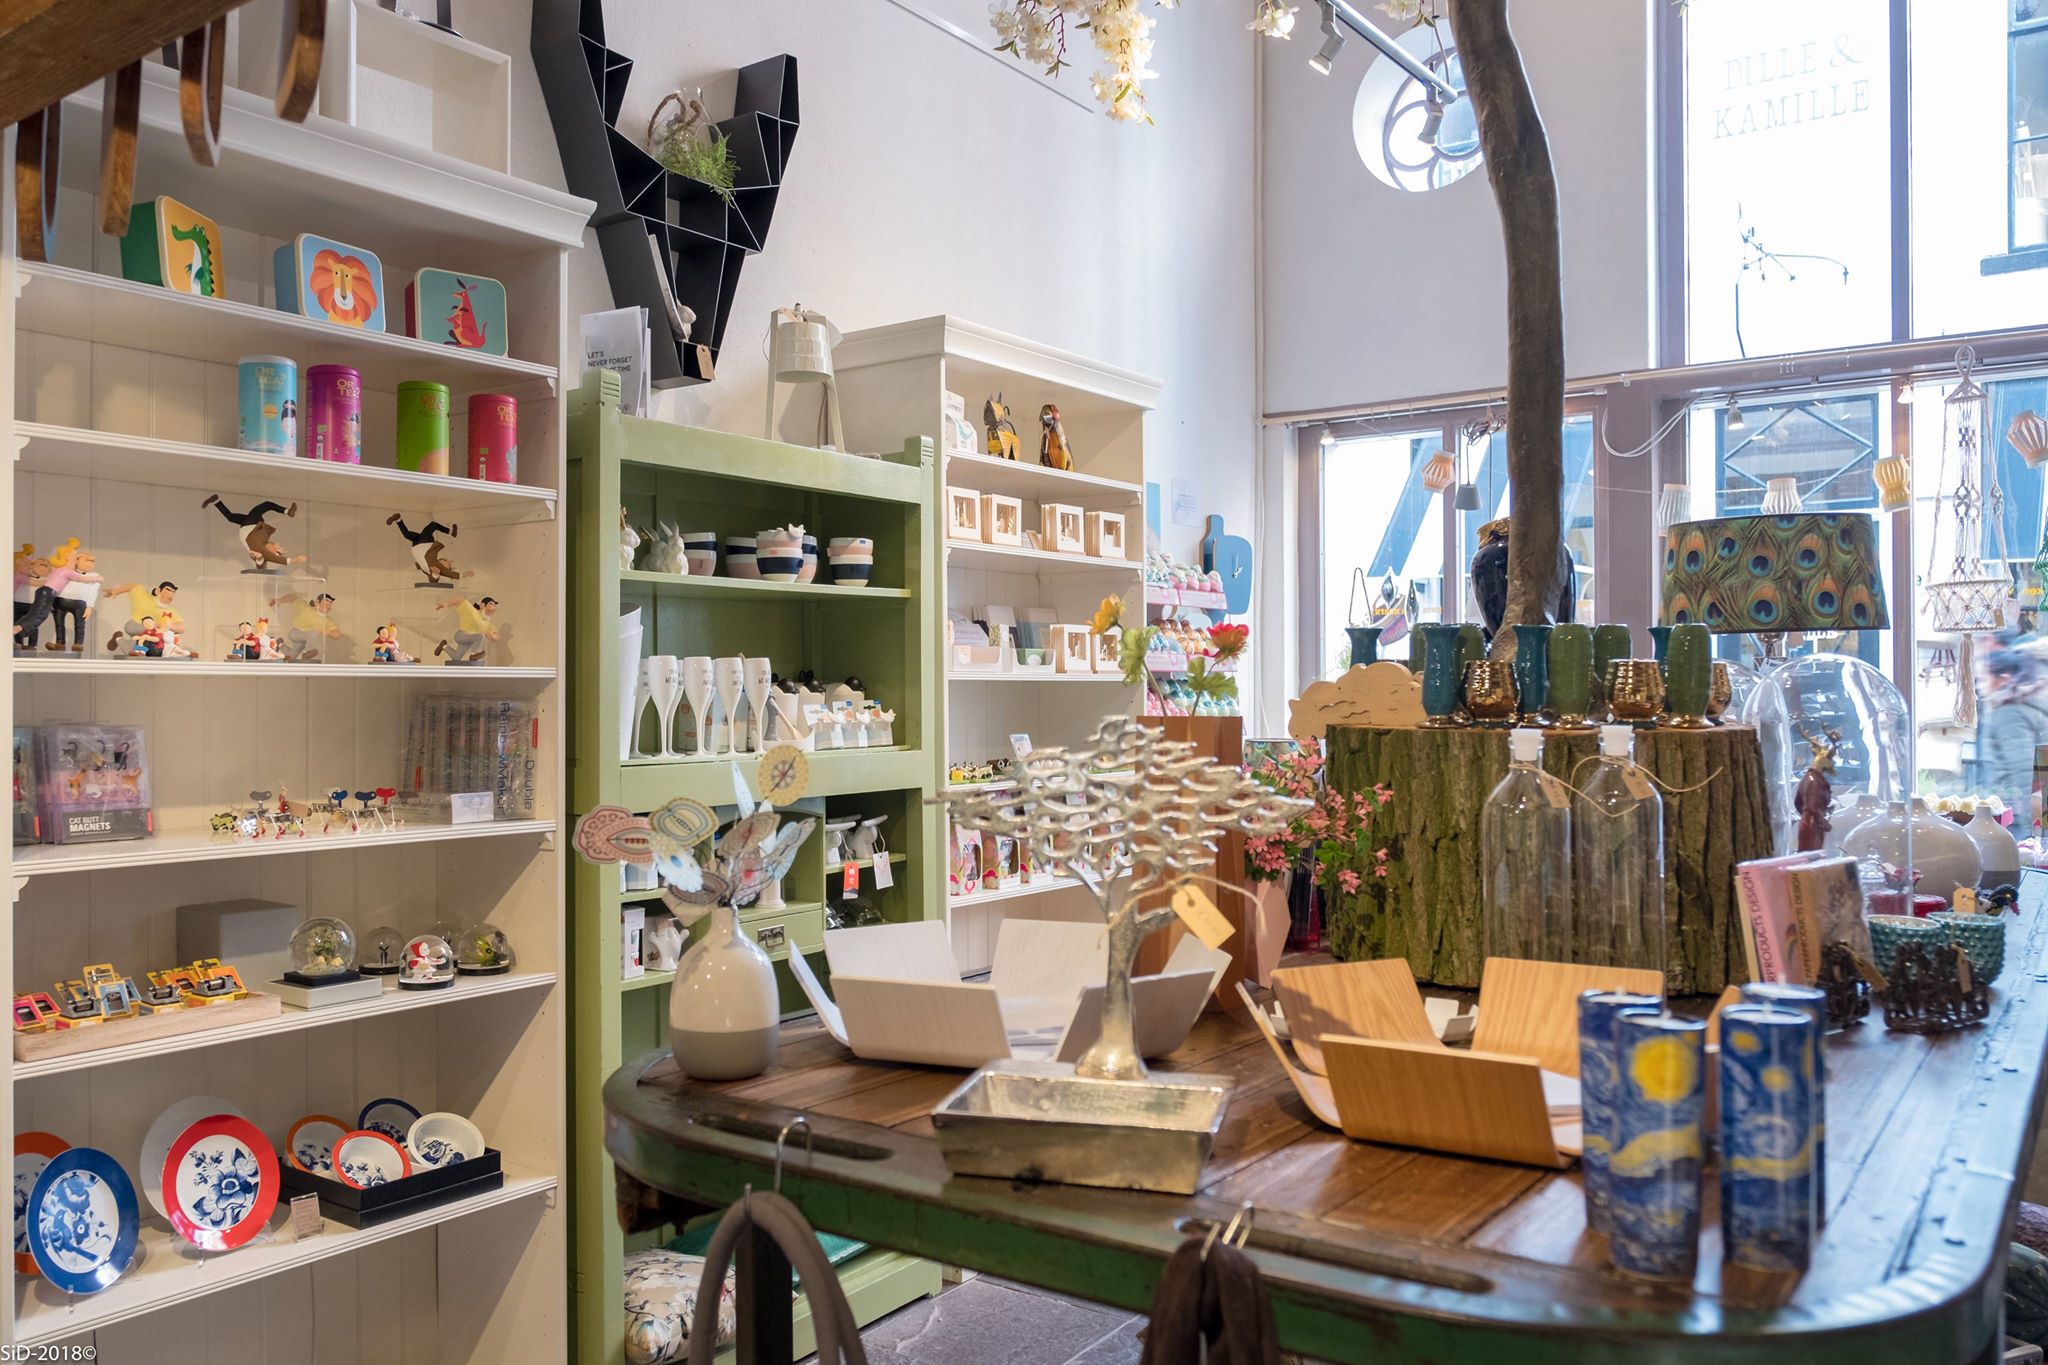 Hicibi en meer winkels vind je bij Shoppen in Deventer